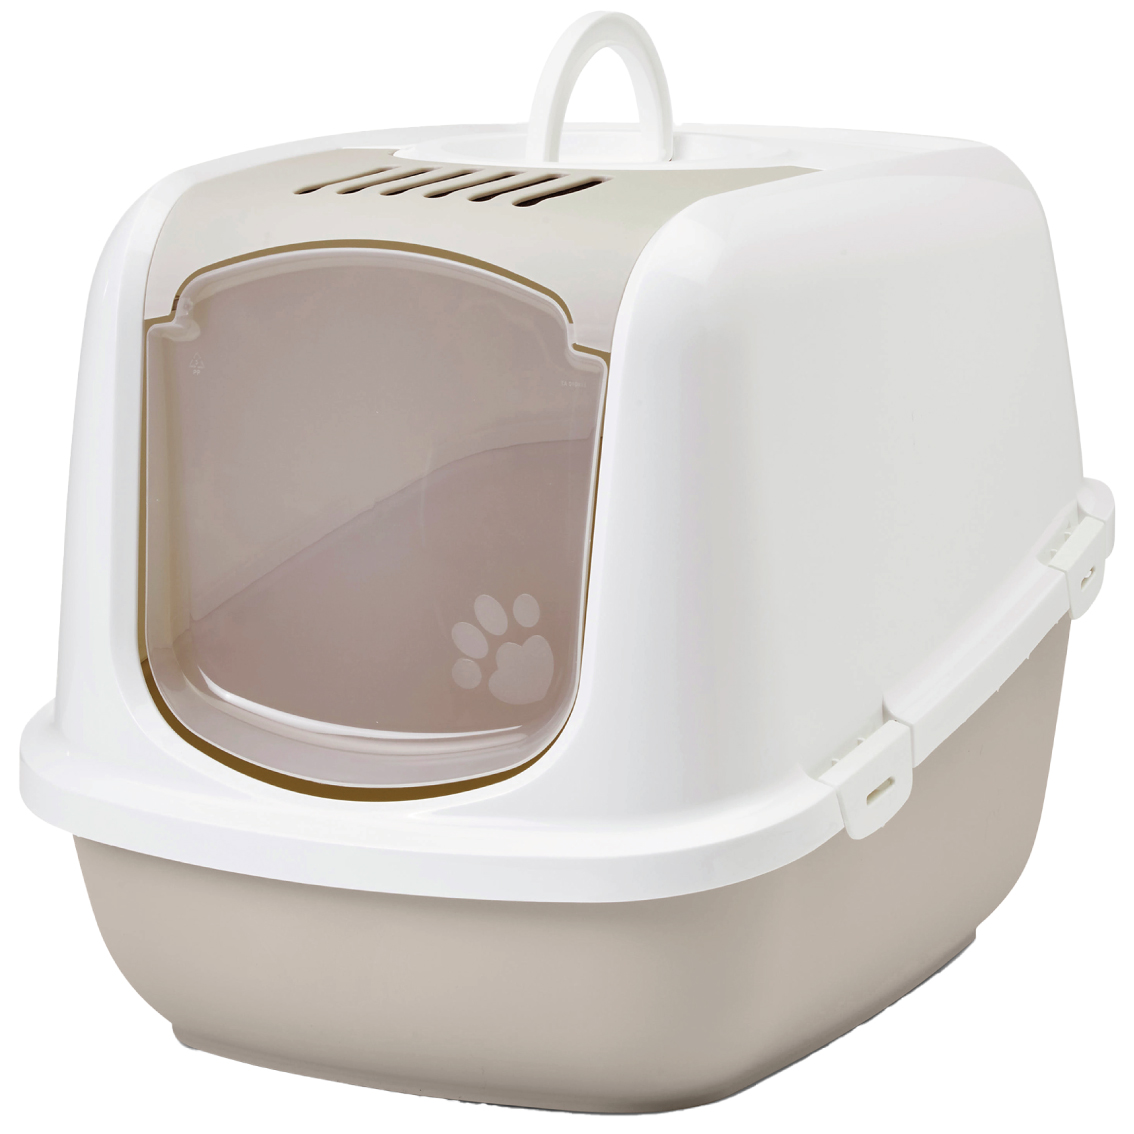 猫トイレ 大型 おすすめ 飛び散らない フルカバー 洗いやすい シンプル おしゃれ 脱臭 ドーム 送料無料 ネコトイレ SAVIC(セイヴィック) ネスタージャンボ